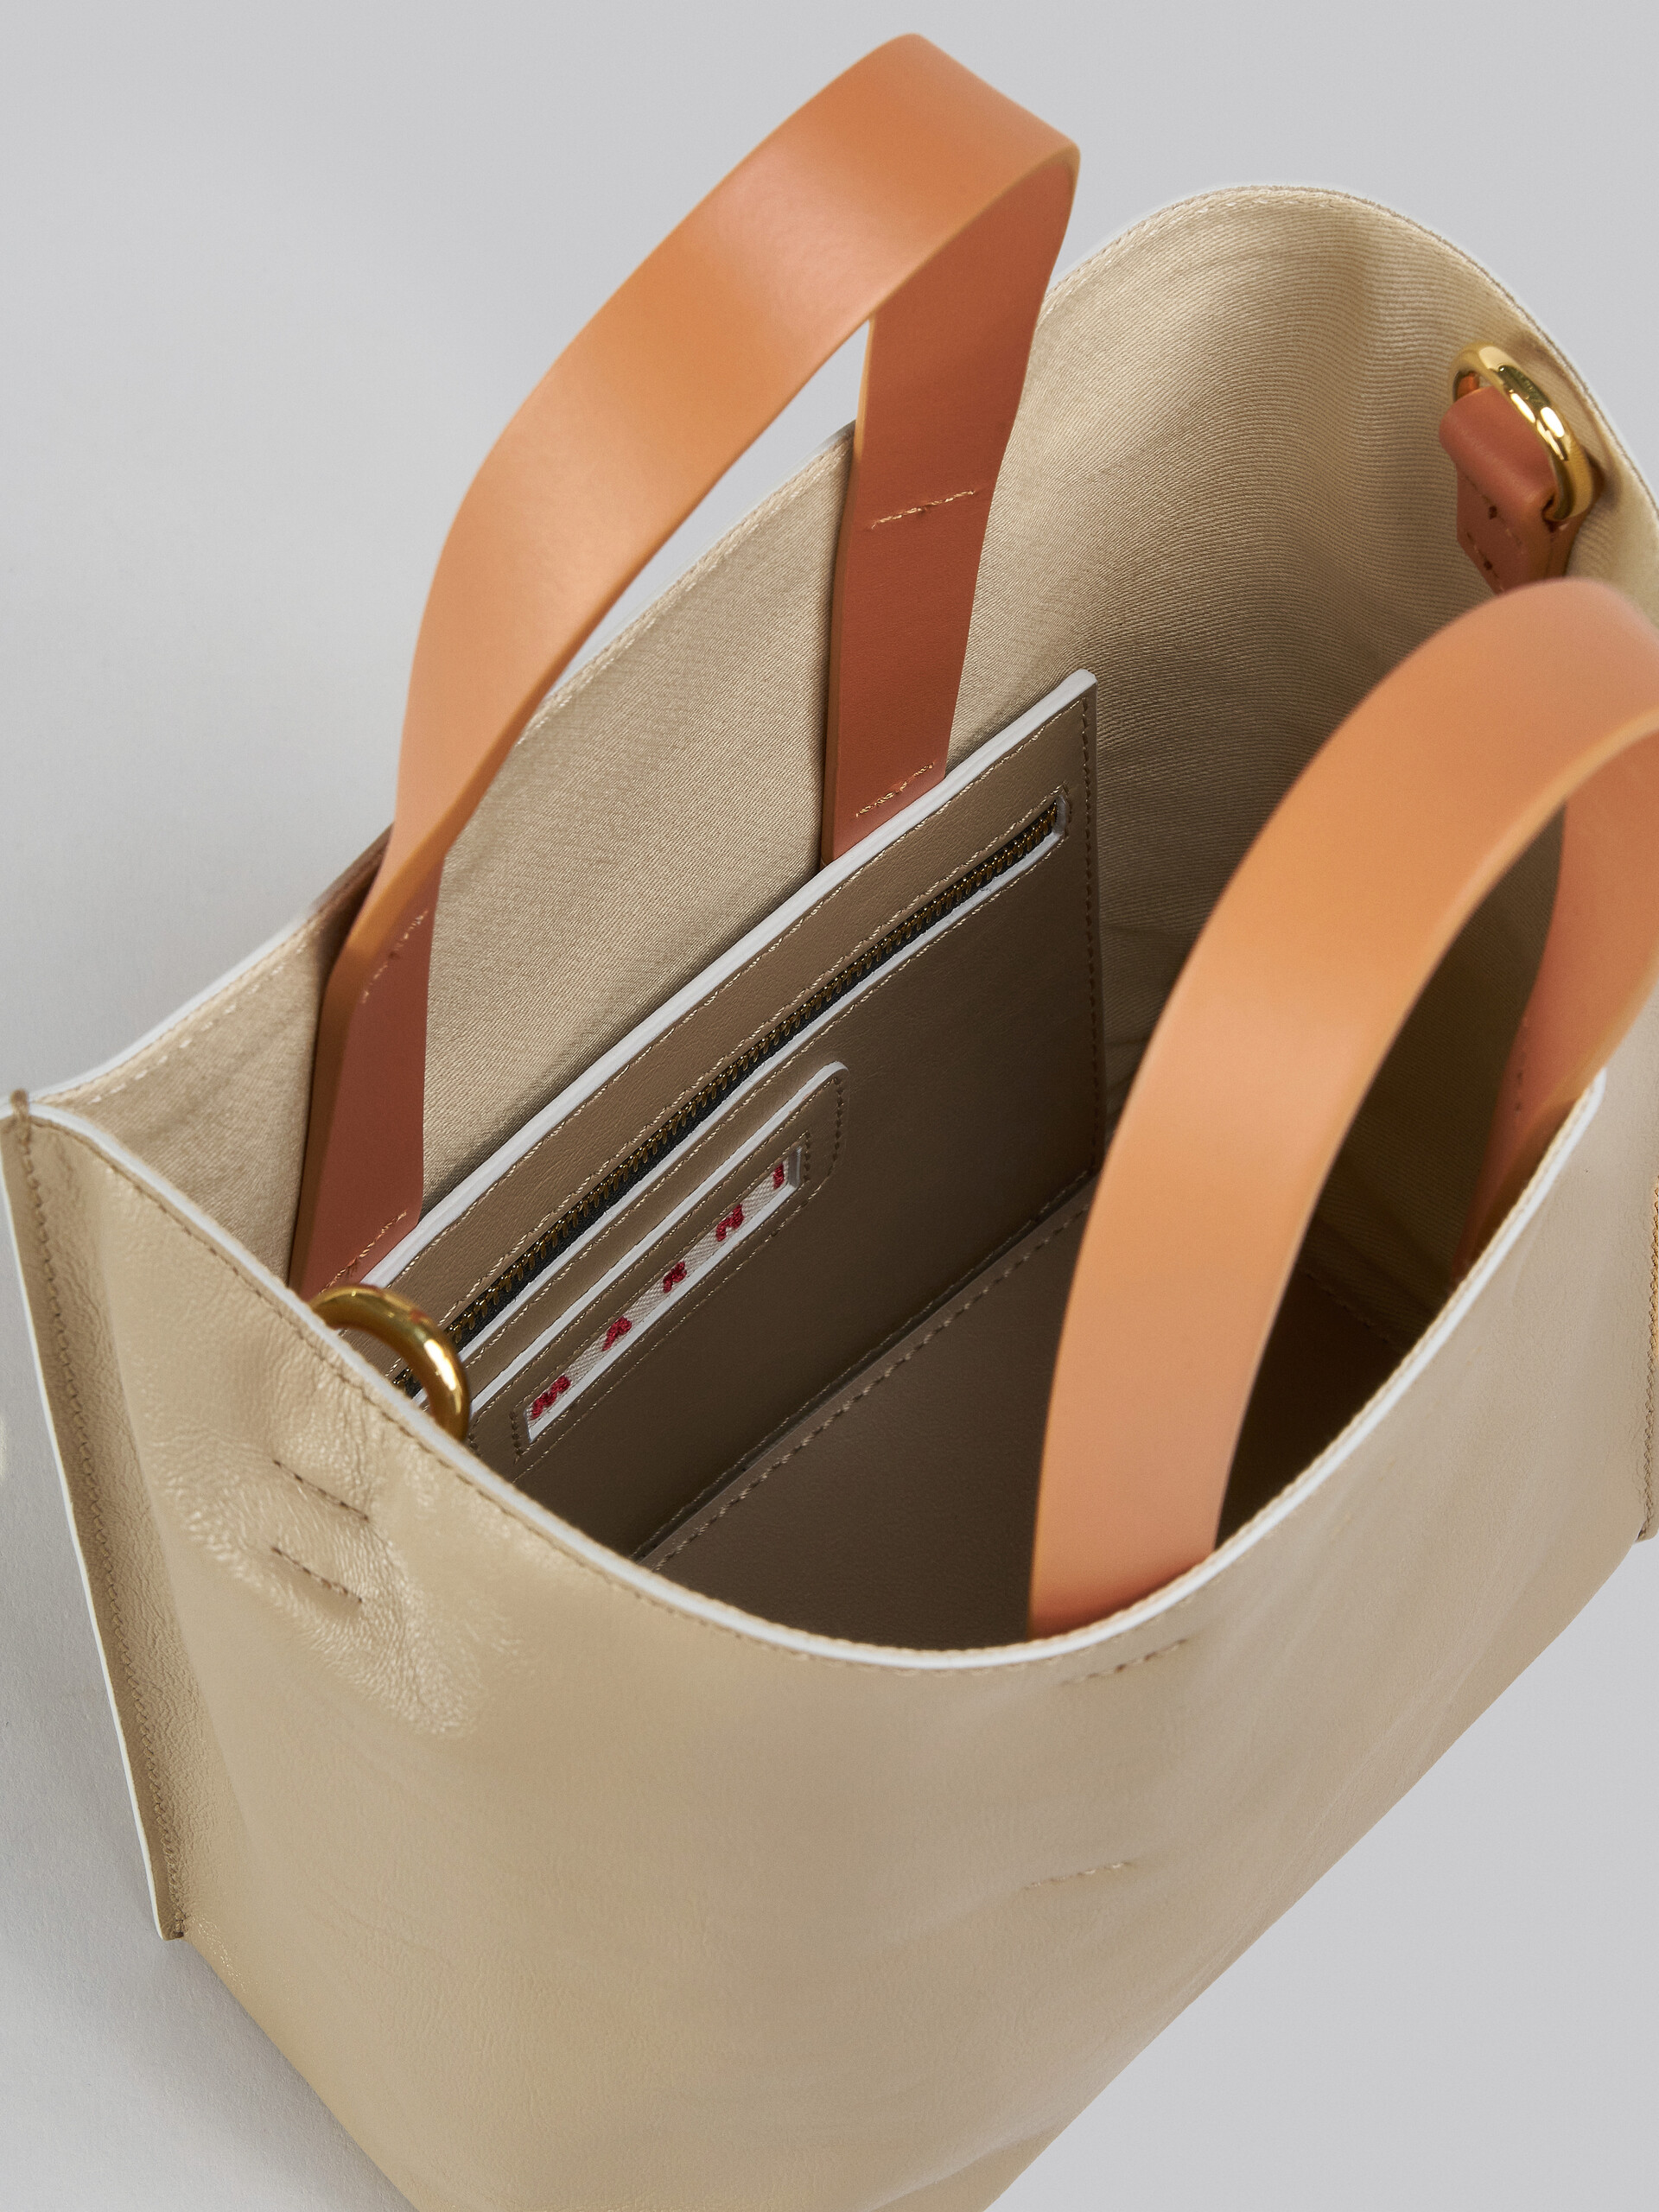 Mini-Tasche Museo Soft aus Leder in Grau, Schwarz und Rot - Shopper - Image 4